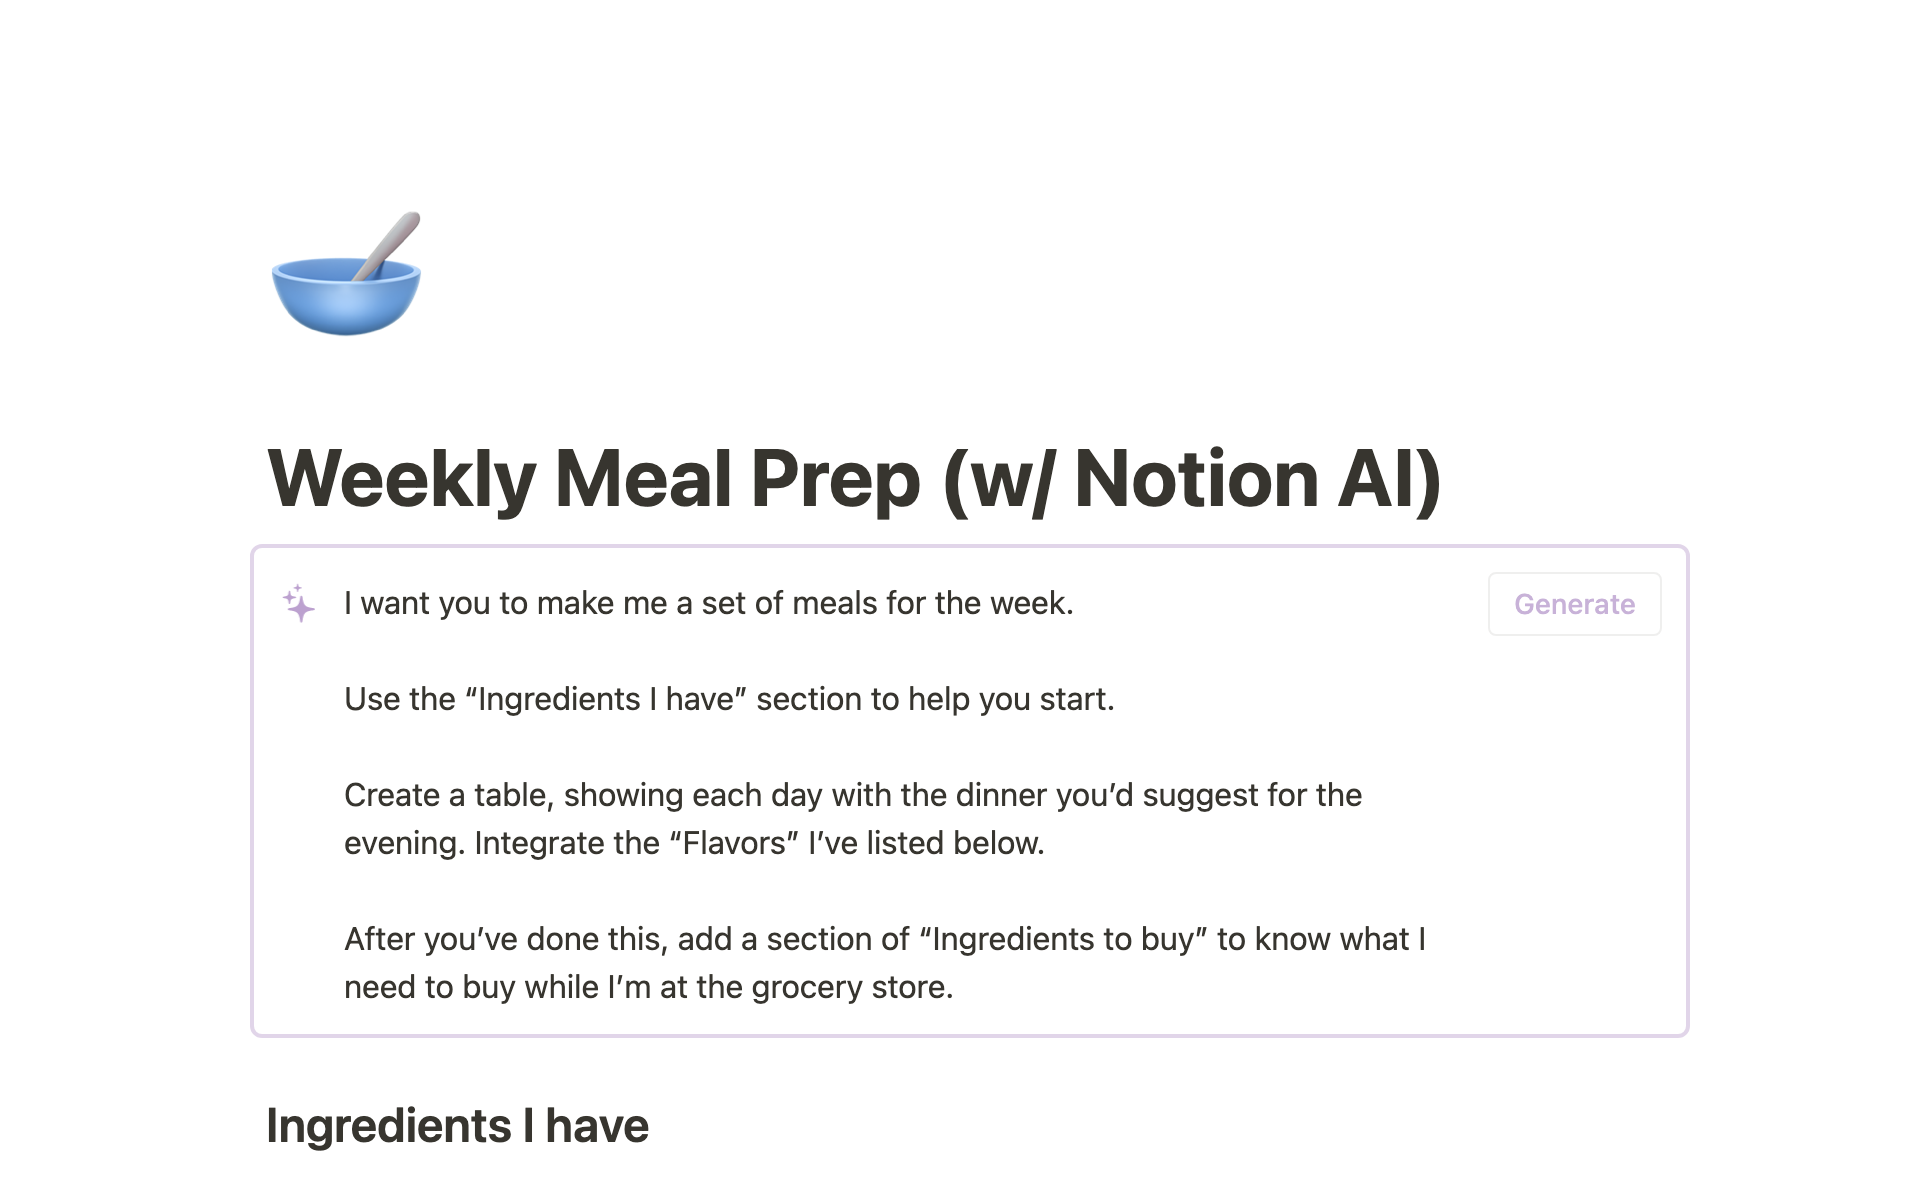 Captura de pantalla de la colección 7 plantillas de Notion para estudiantes basadas en IA creada por Notion